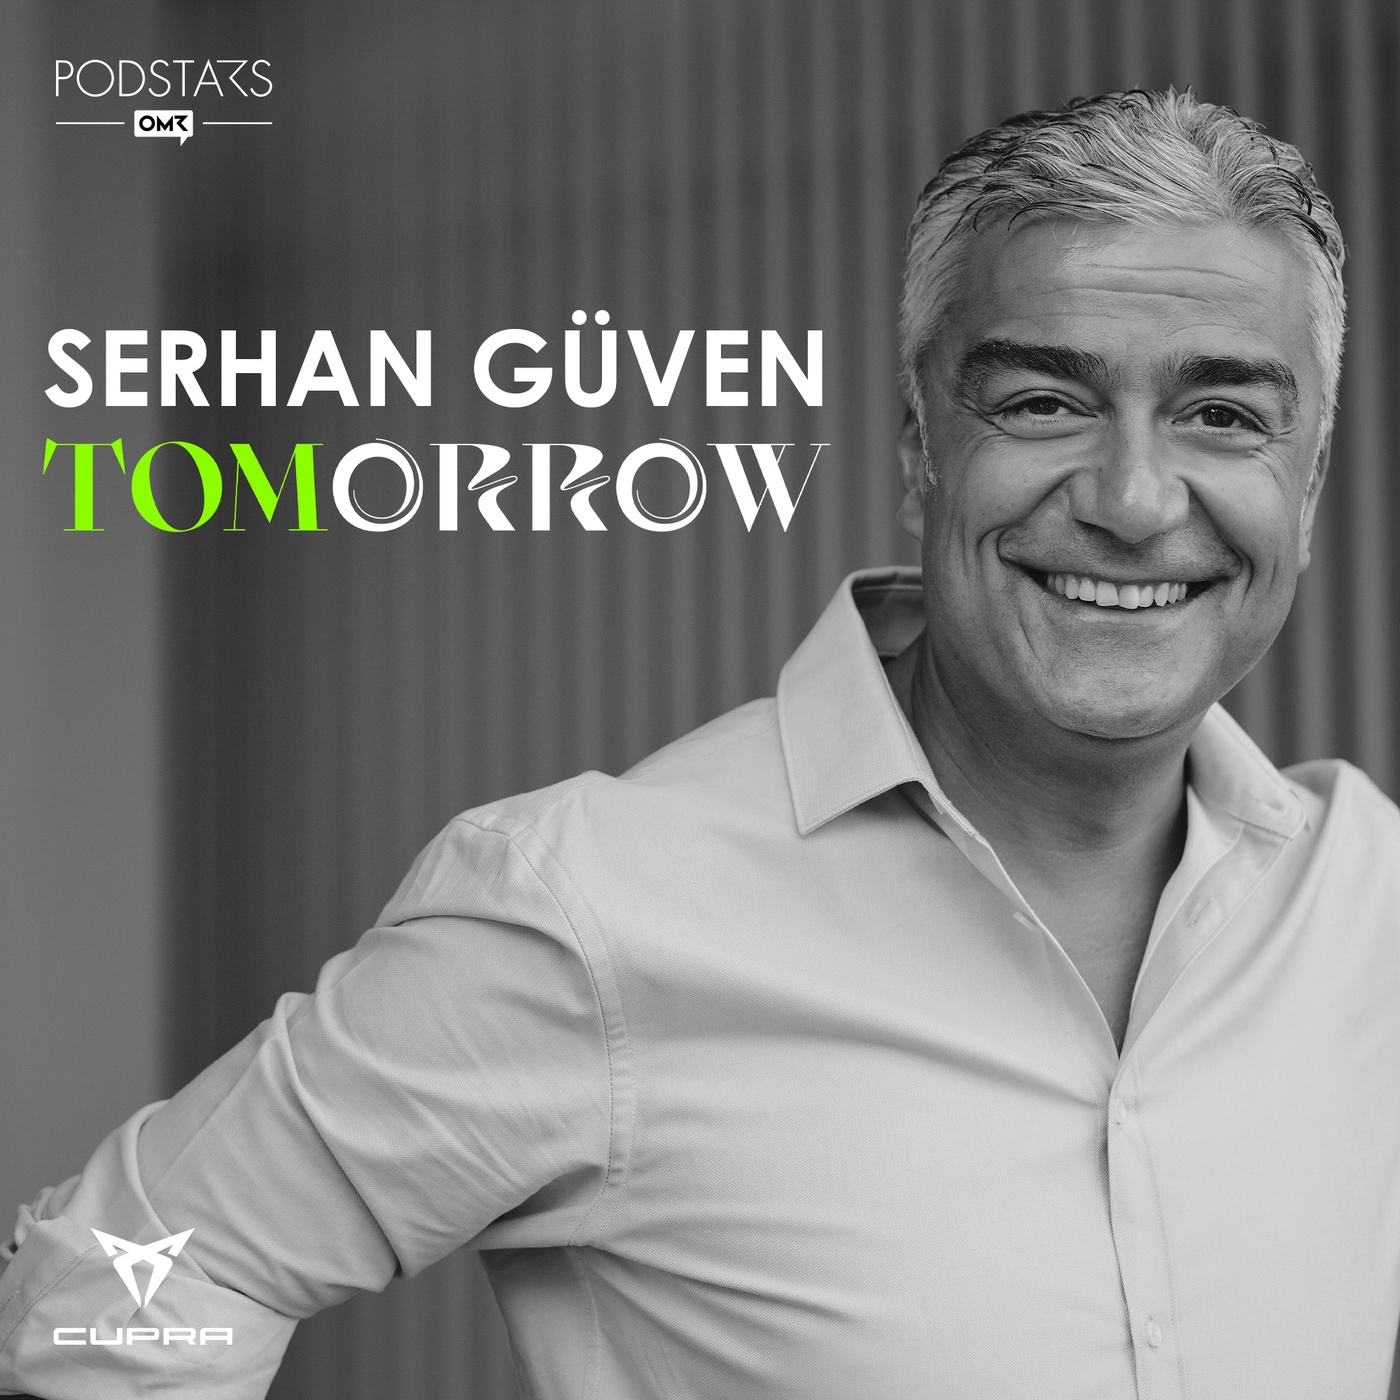 Das Luxury Medical Spa der Superstars – mit Serhan Güven